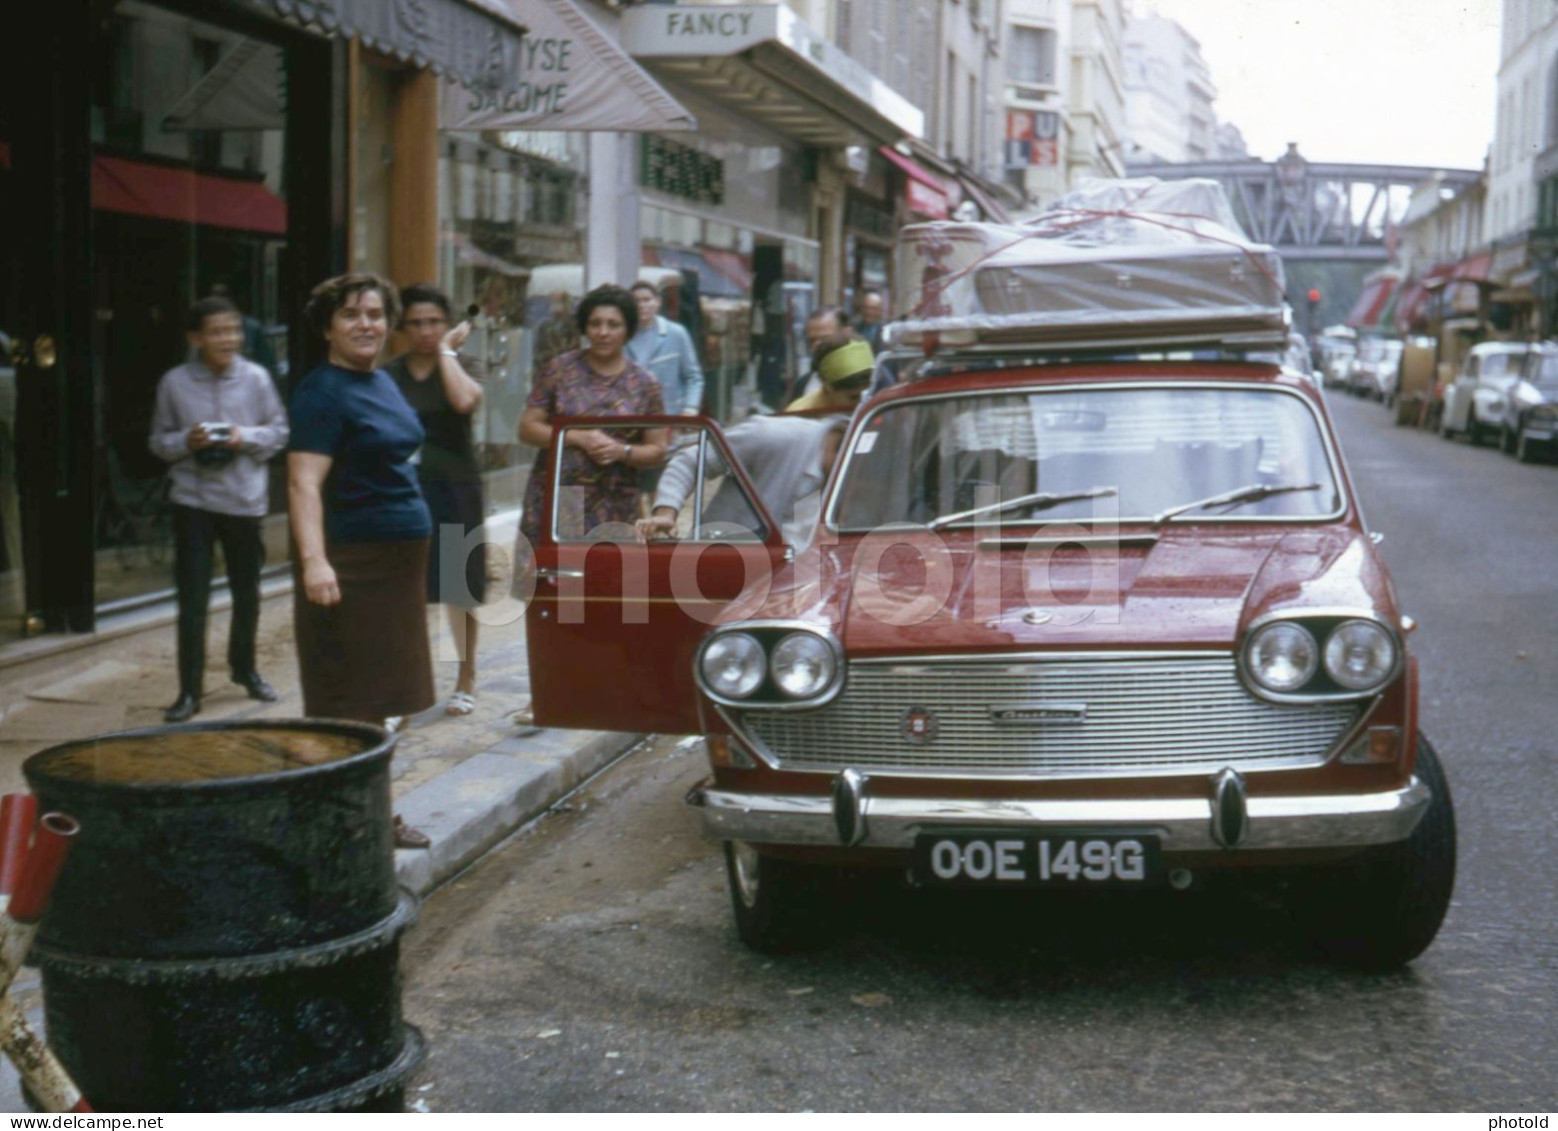 1969 UK PLATE AUSTIN 3 LITRE CAR RUE DU COMMERCE PARIS FRANCE 35mm AMATEUR DIAPOSITIVE SLIDE Not PHOTO No FOTO NB4129 - Diapositives (slides)